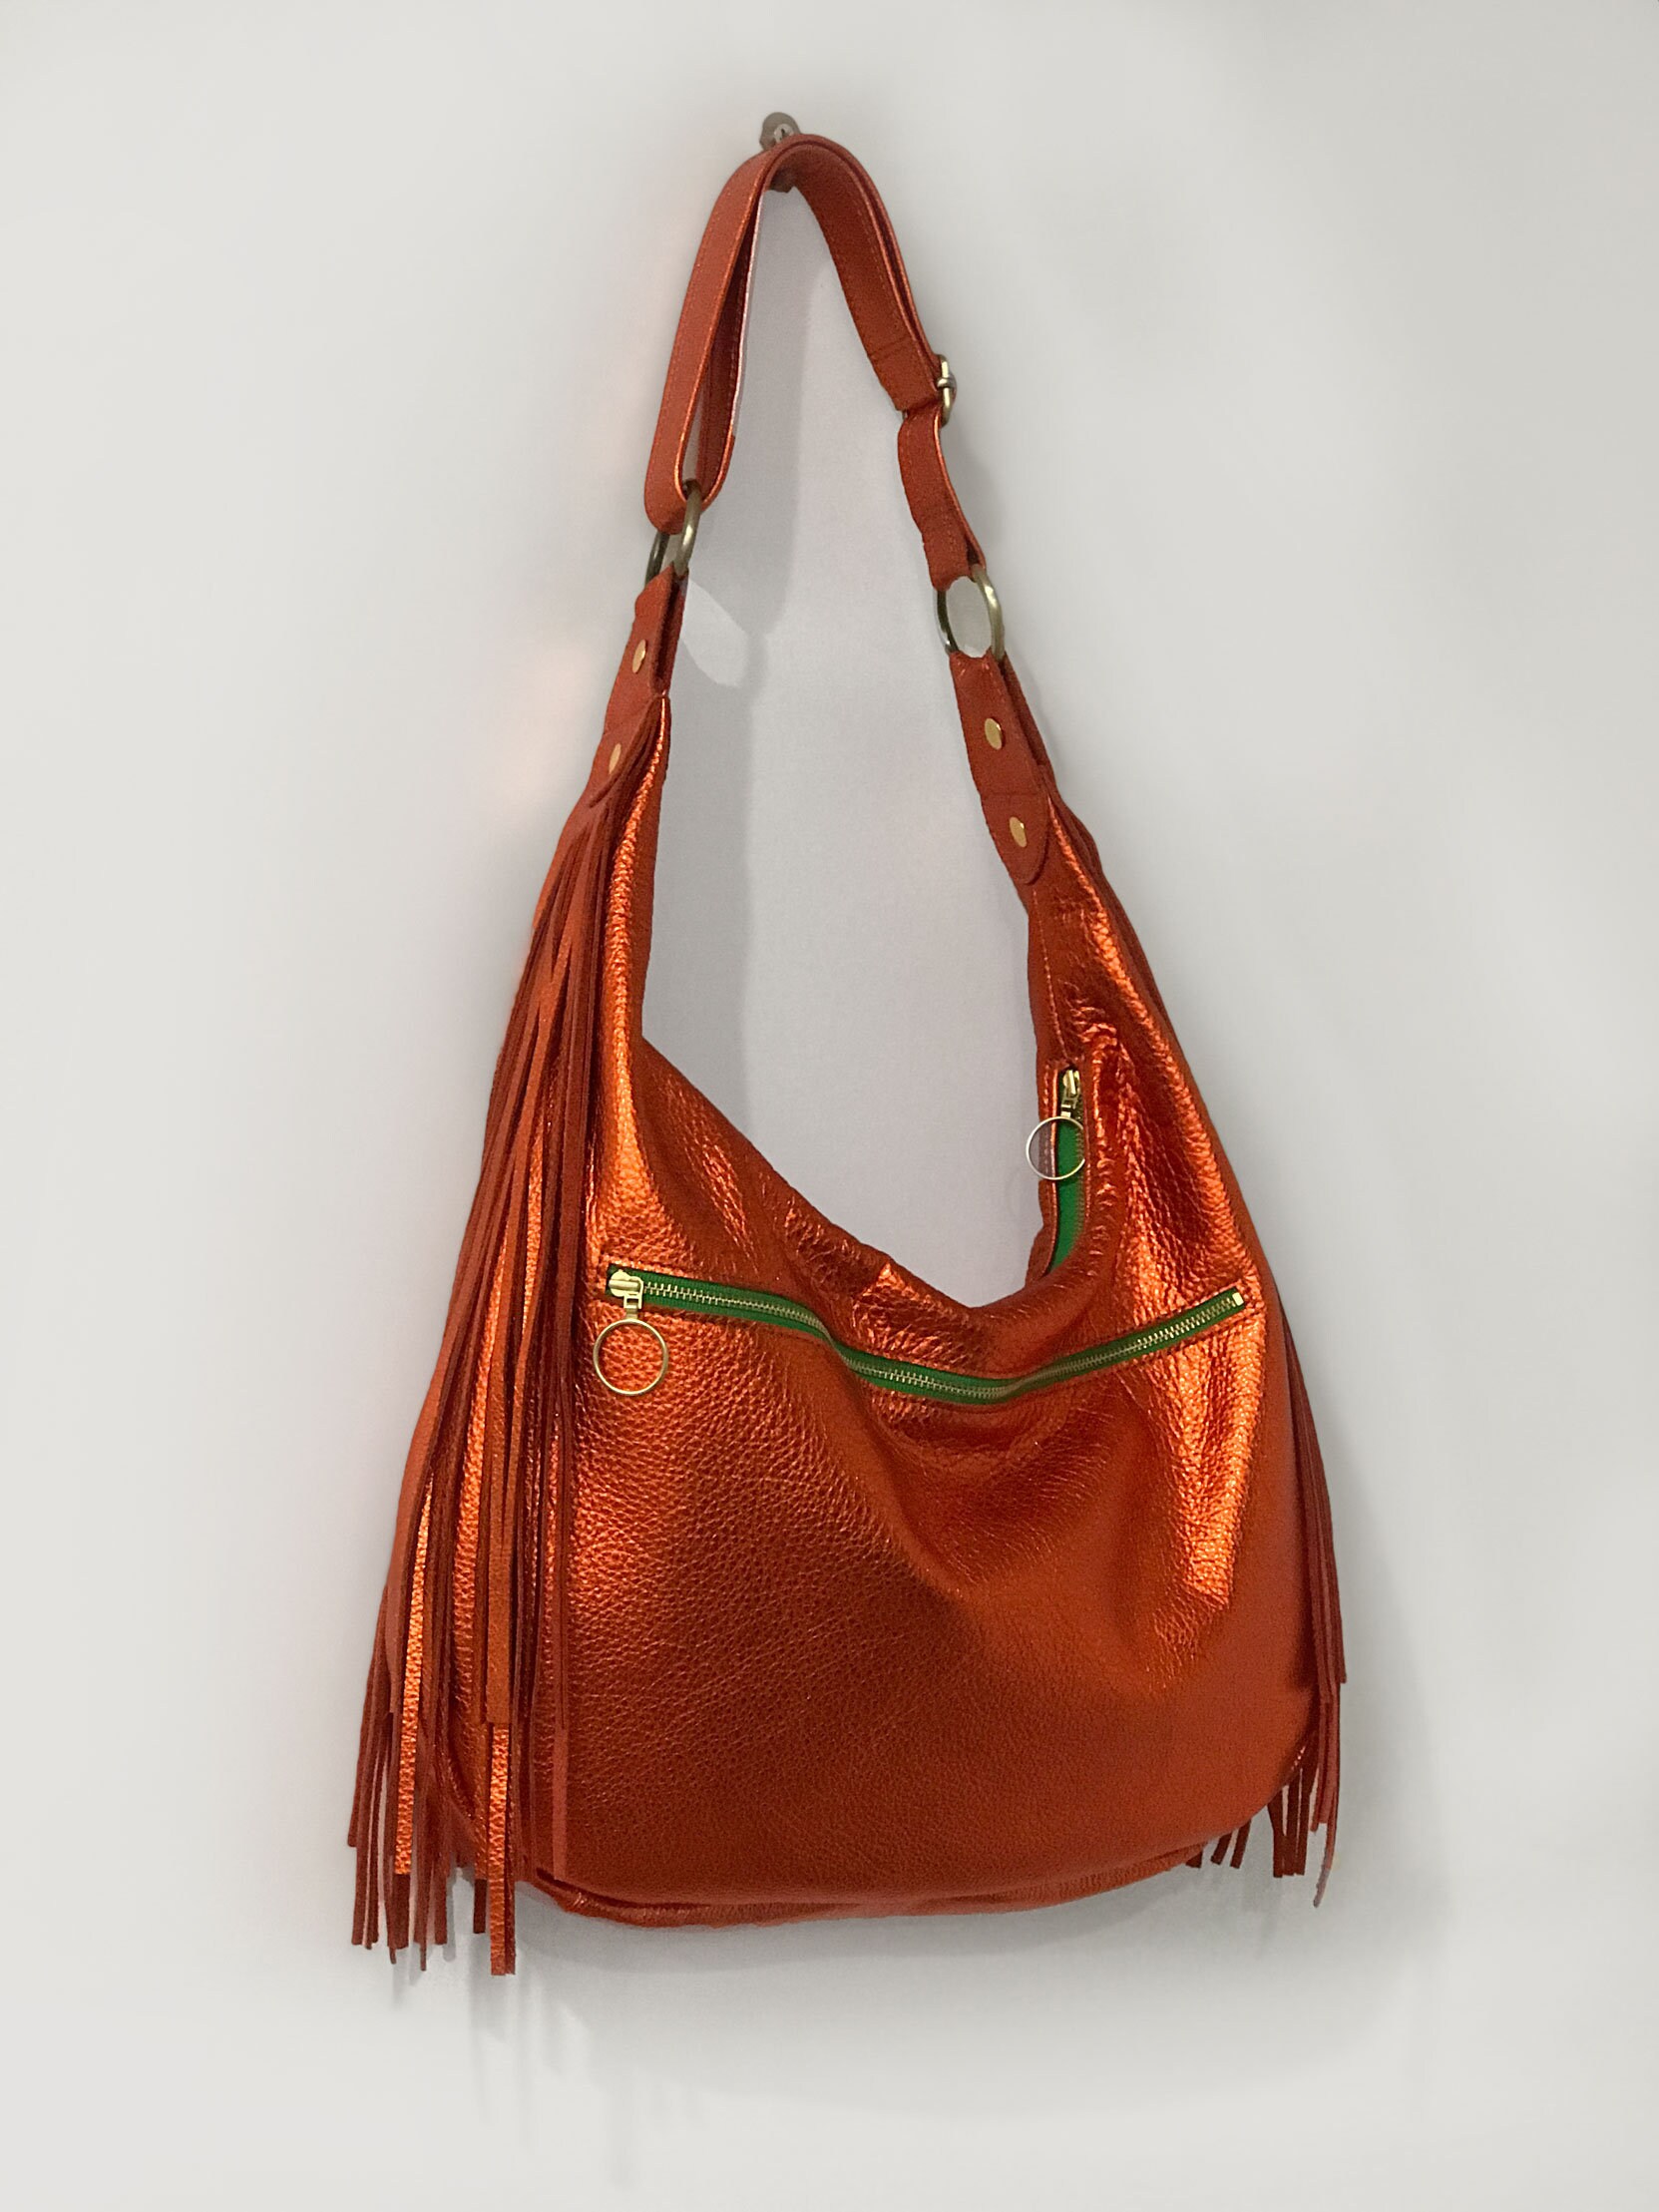 Leather handbag Hereu Orange in Leather - 31163626